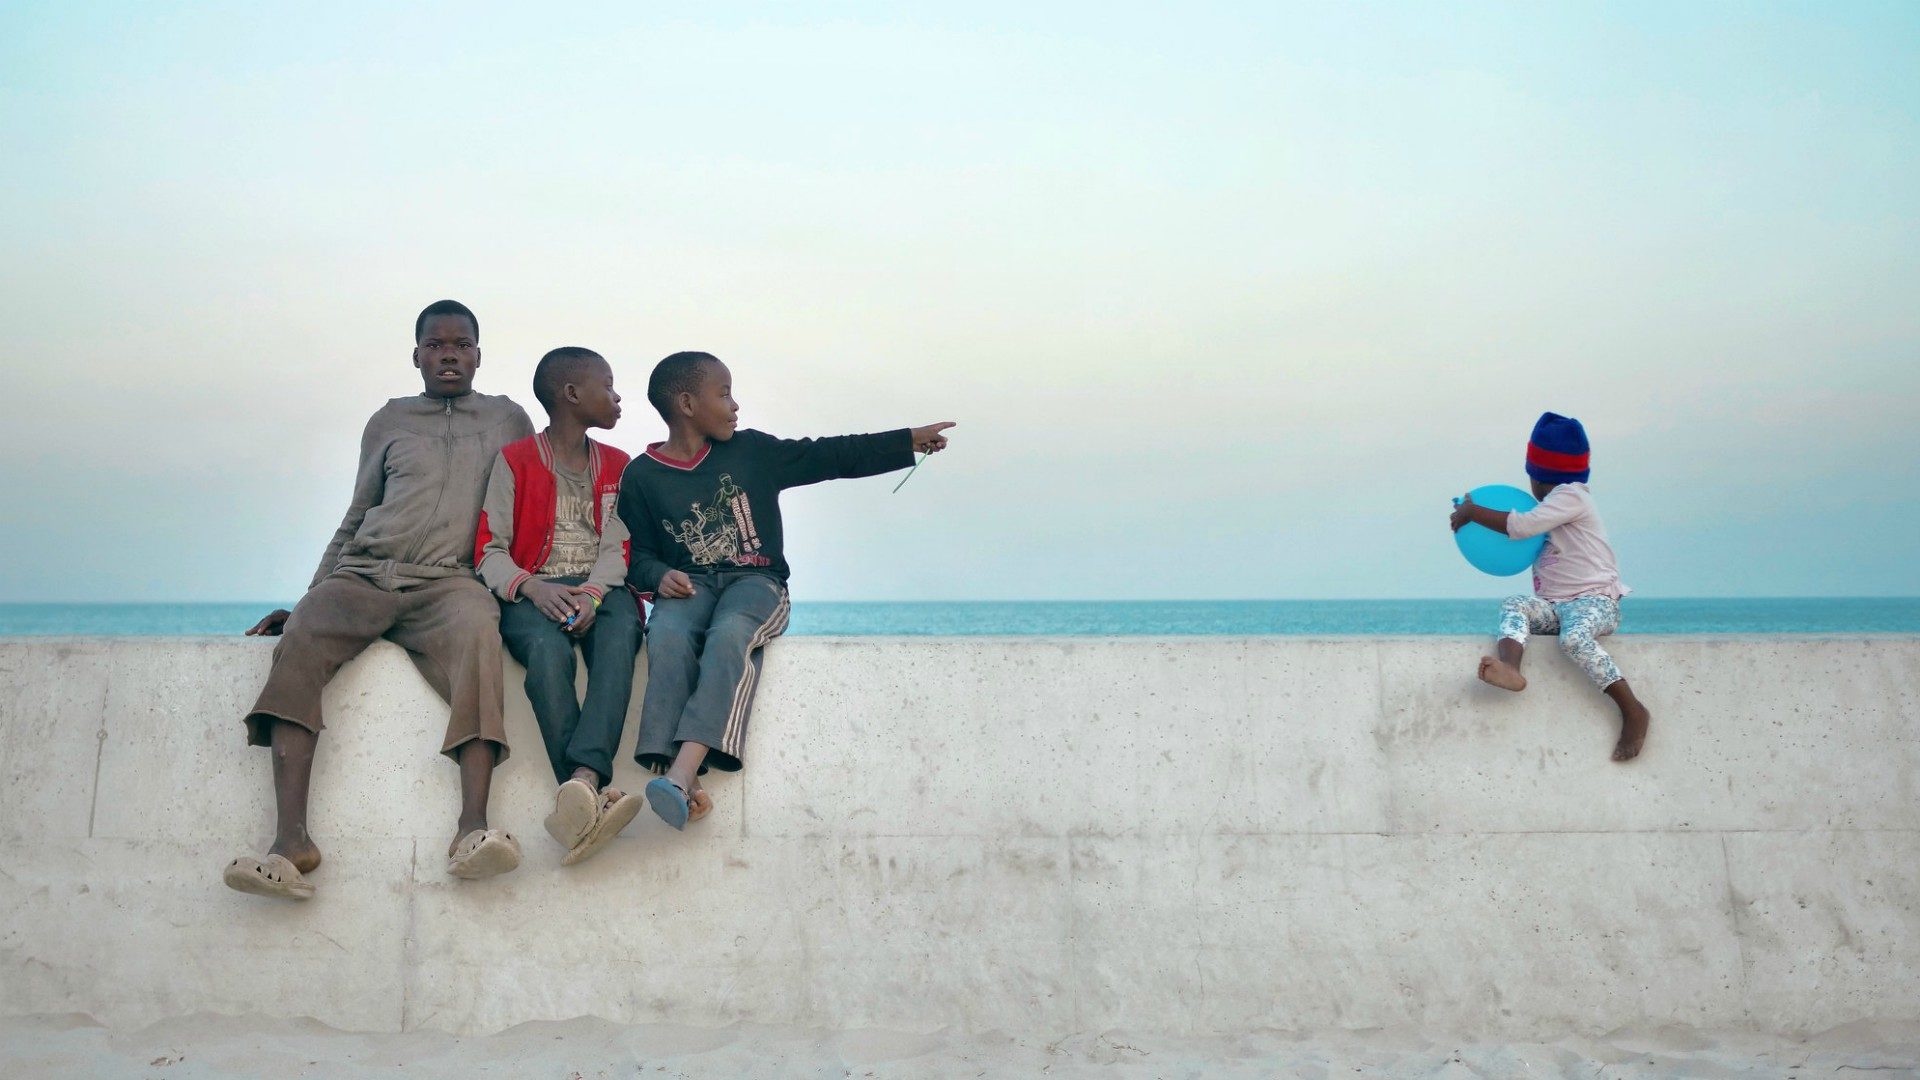 Après des années de violence, les Mozambicains ont retrouvé l'espoir d'une vie meilleure | © Abdullah Harun Ilhan/Flickr/CC BY-NC-ND 2.0